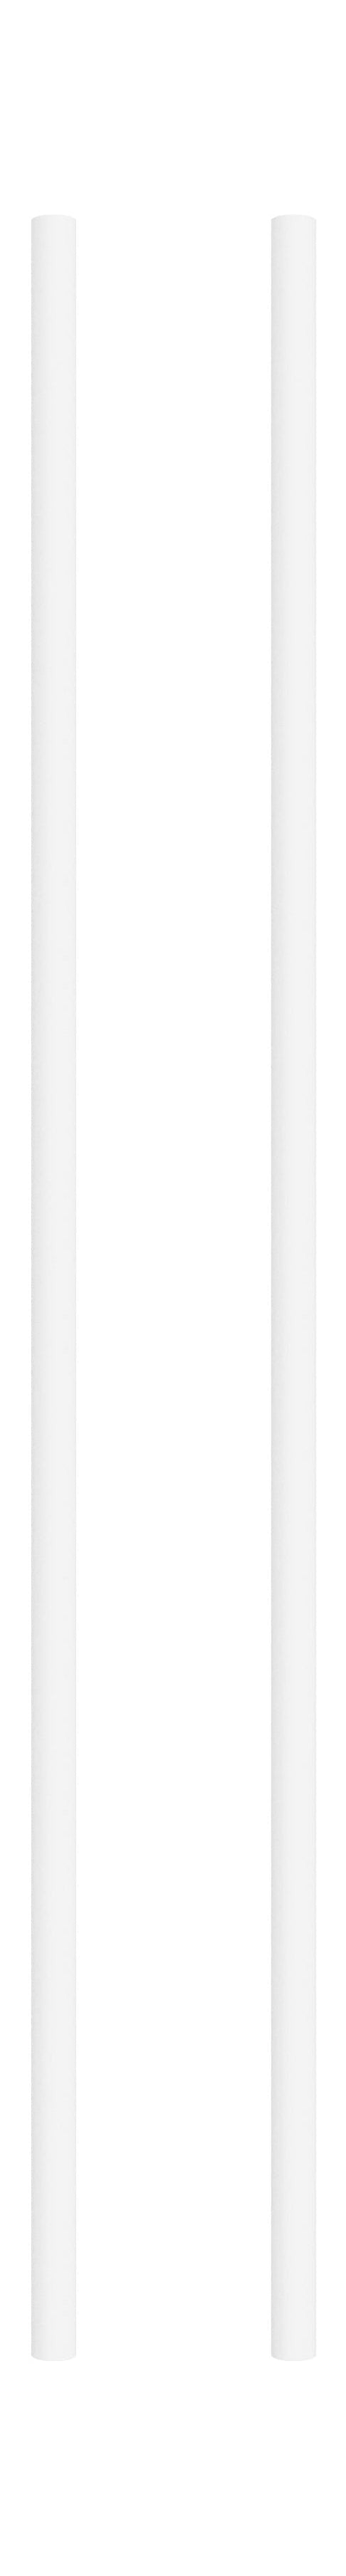 Moebe Spling -systeem/muurrekken been 85 cm wit, set van 2